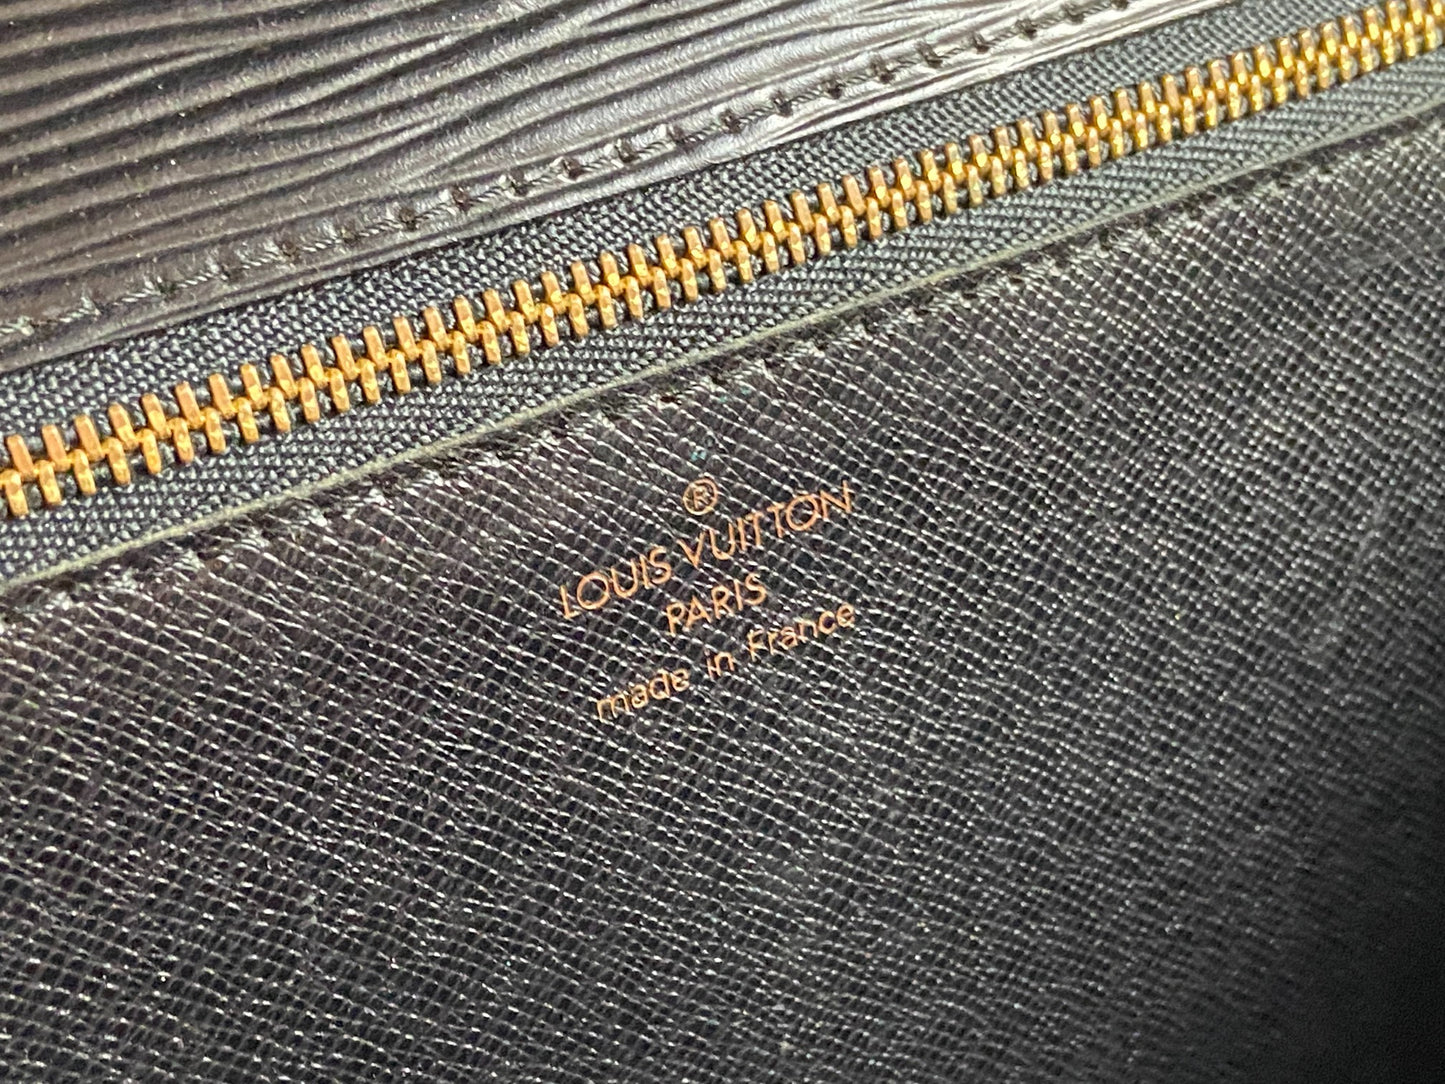 Louis Vuitton Monceau 28 Black Epi Leather